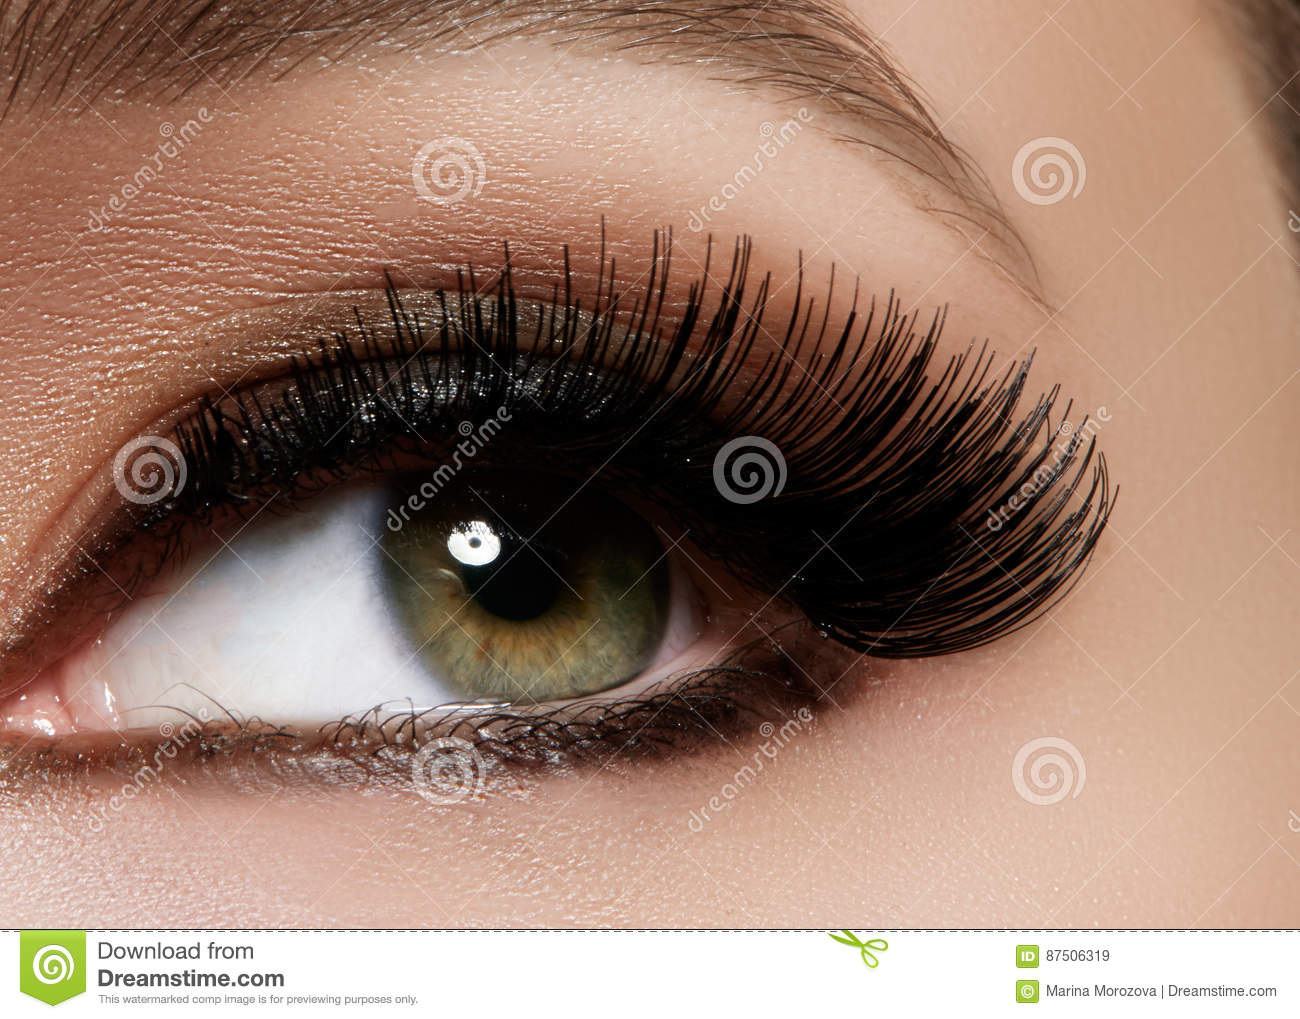 Extreme Eye Makeup Beautiful Female Eye With Extreme Long Eyelashes Black Liner Makeup